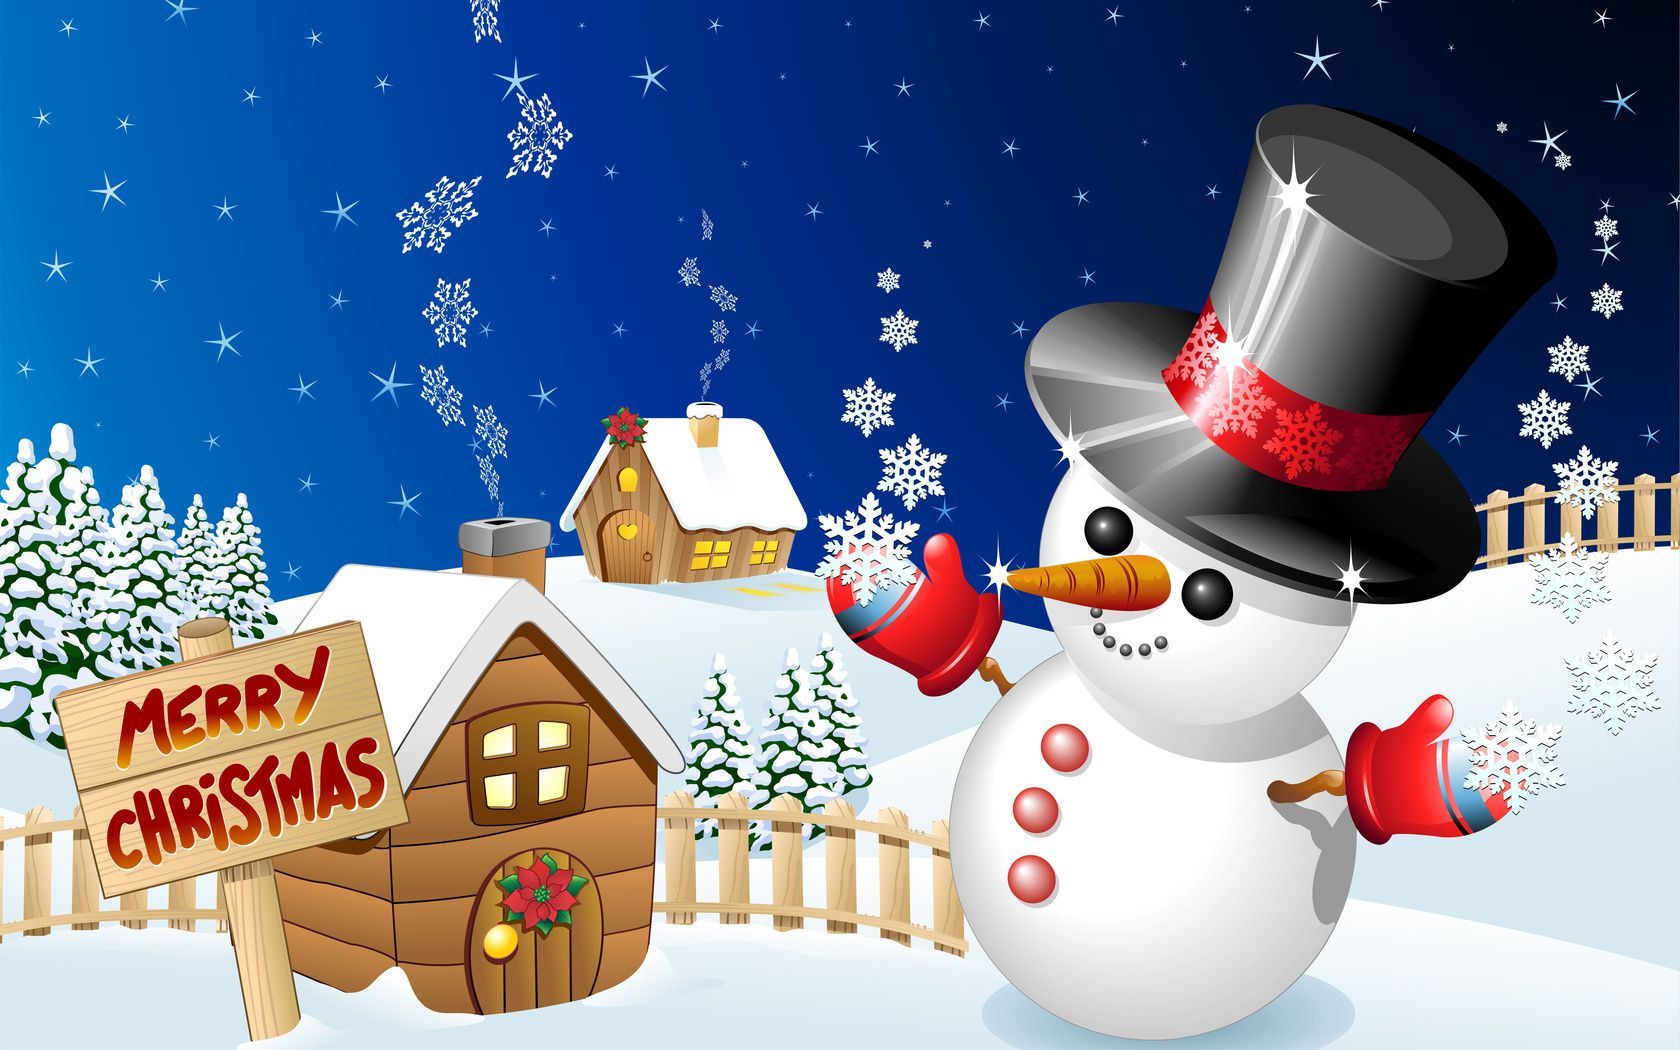 Snowman winter holiday schedule